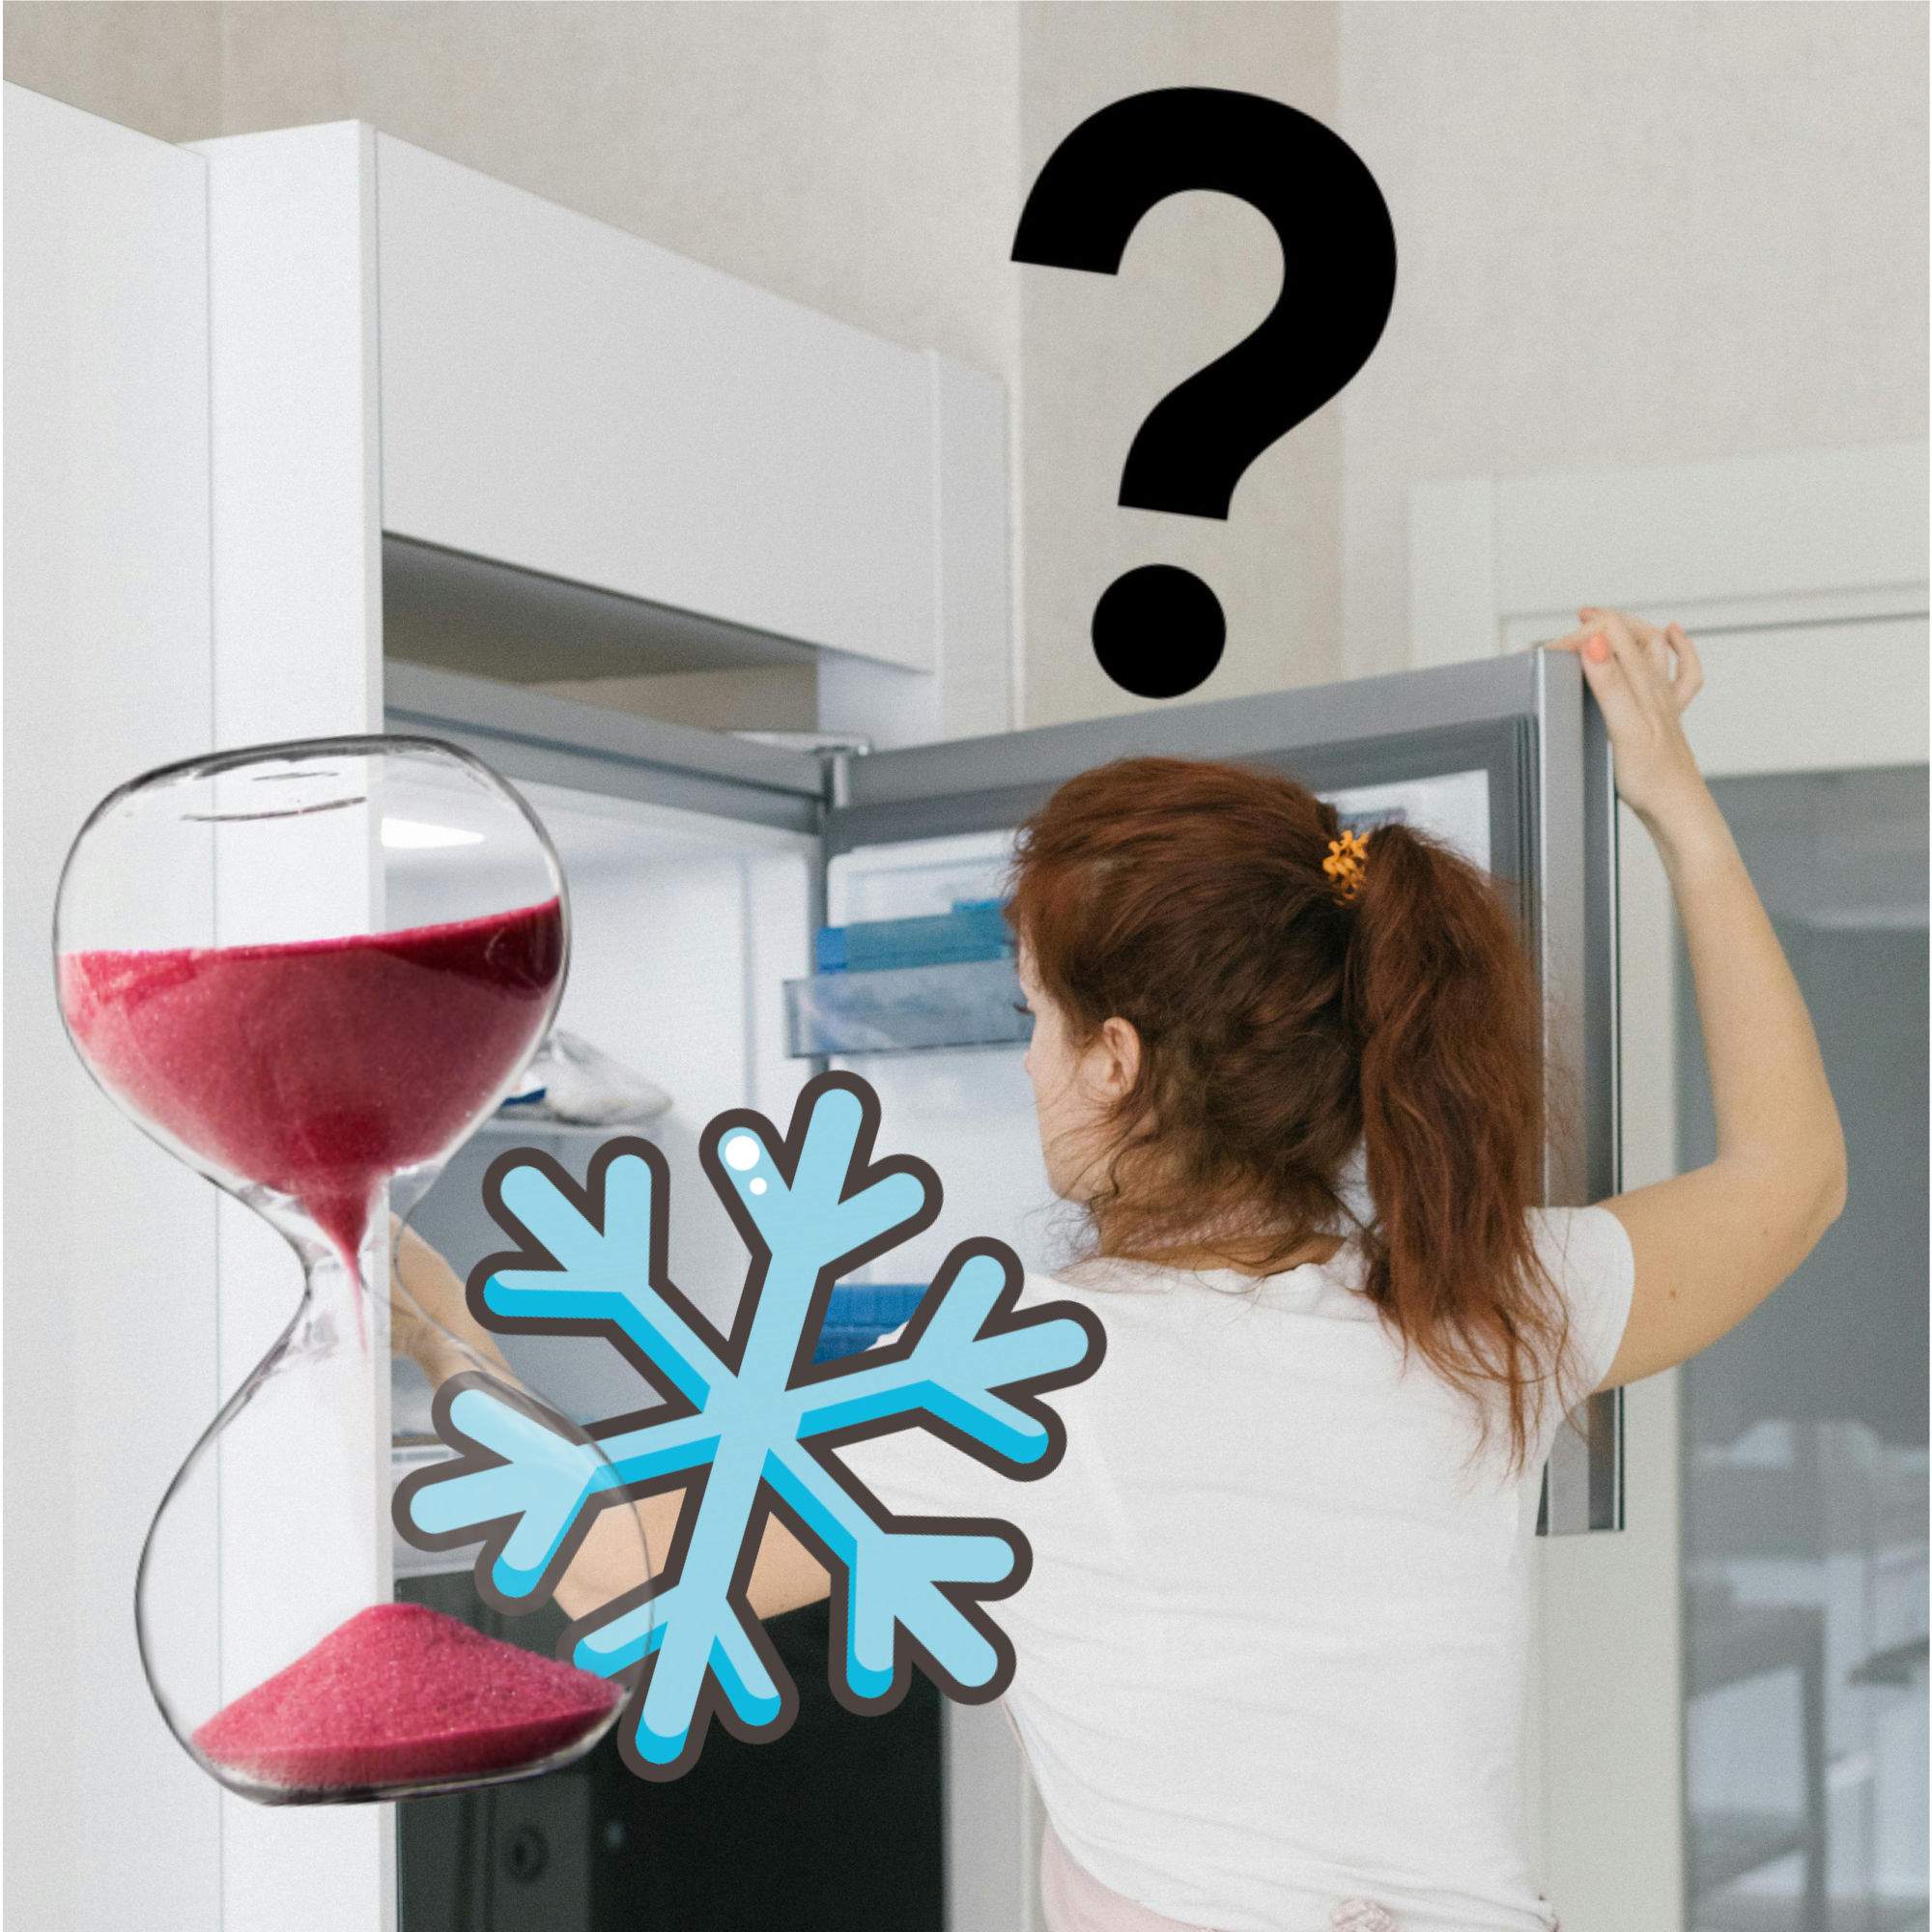 Aquest és el temps que pots tenir cada aliment al congelador